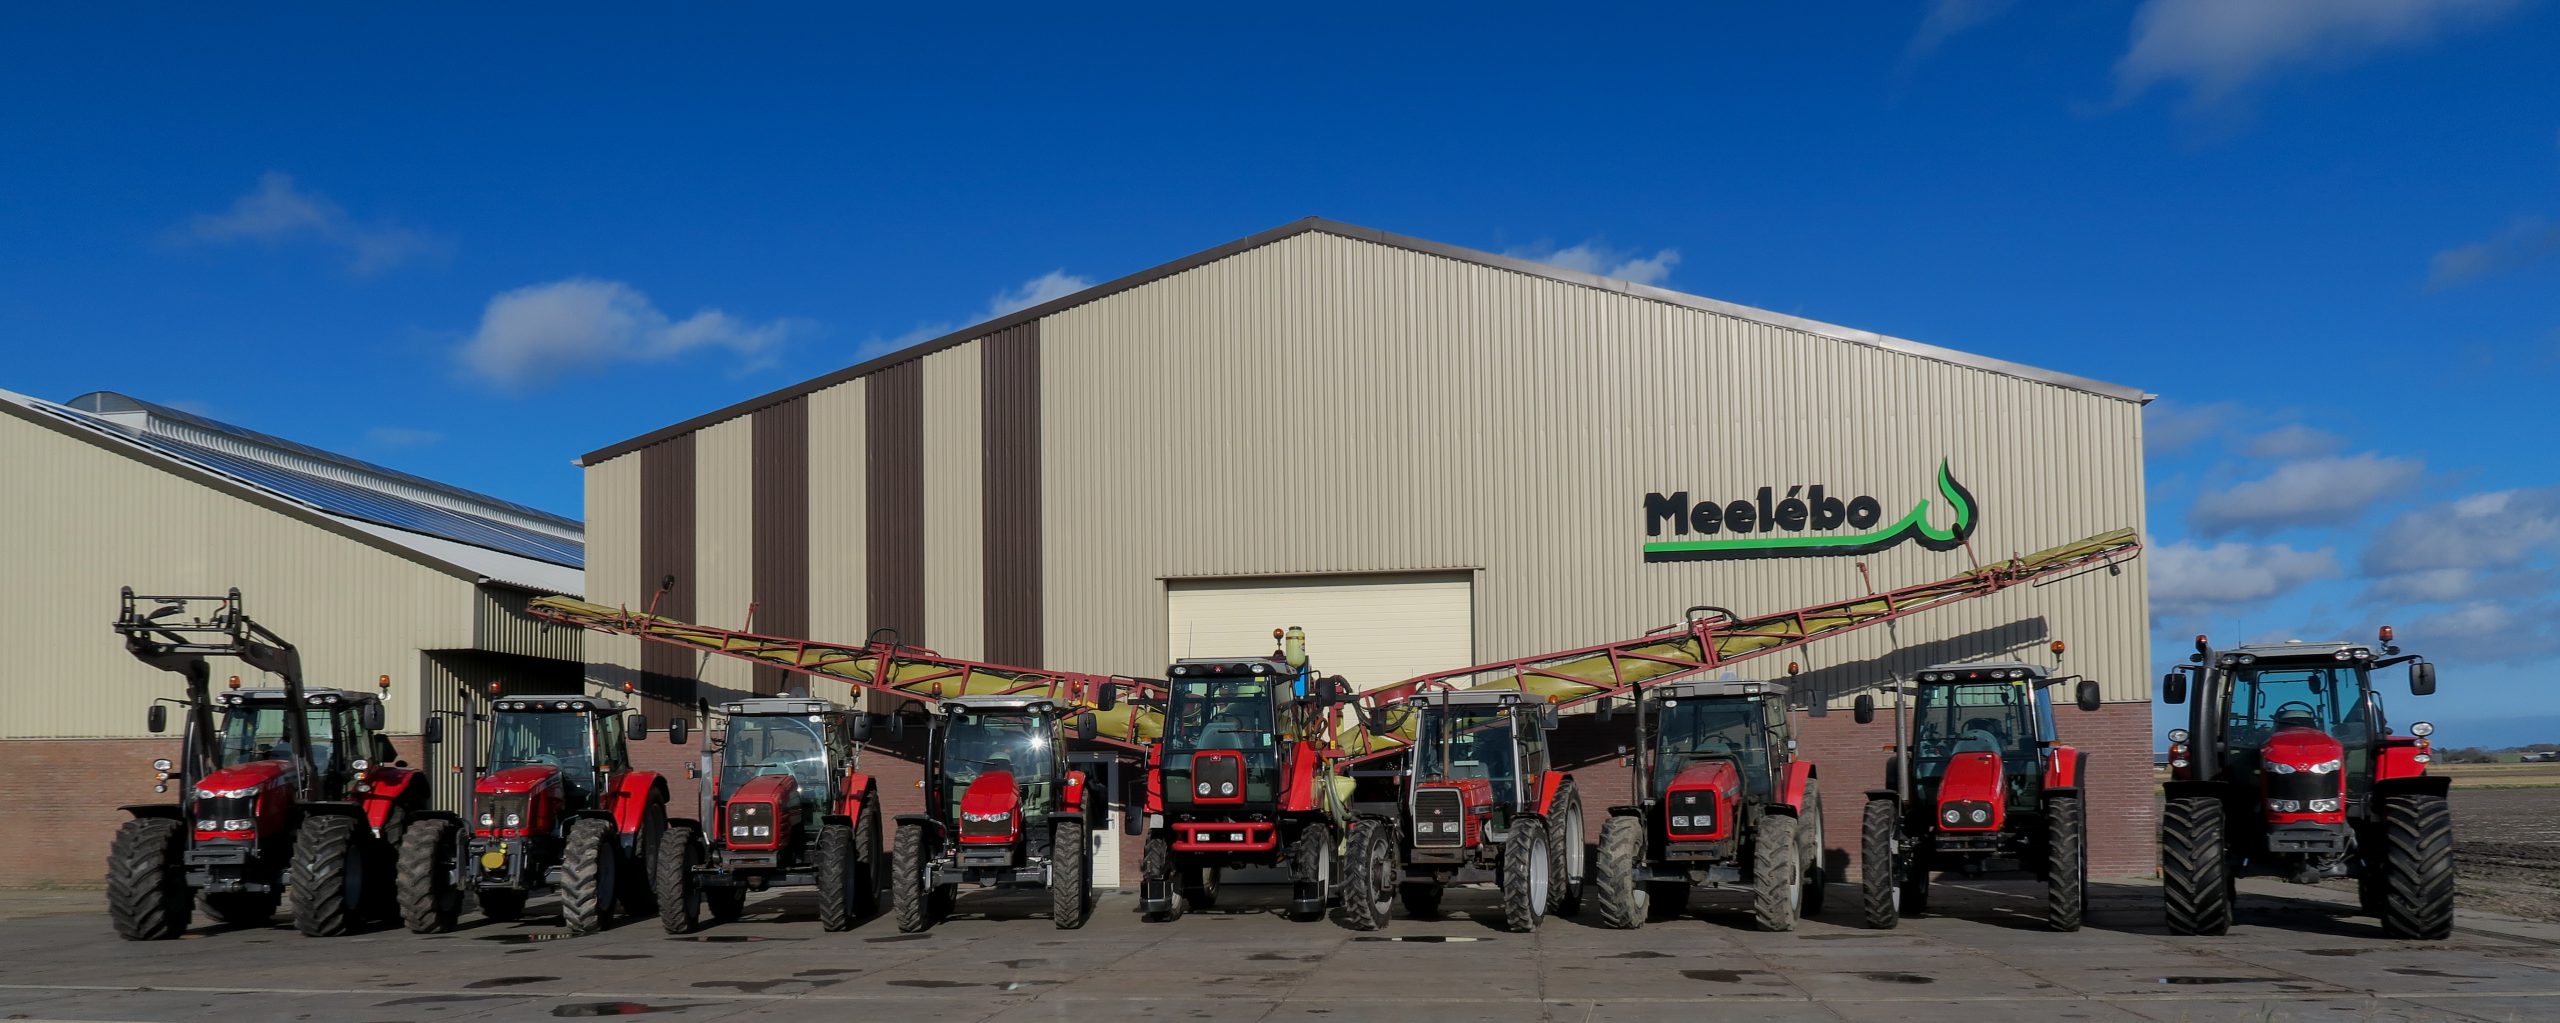 Meelébo bedrijfspand met tractors